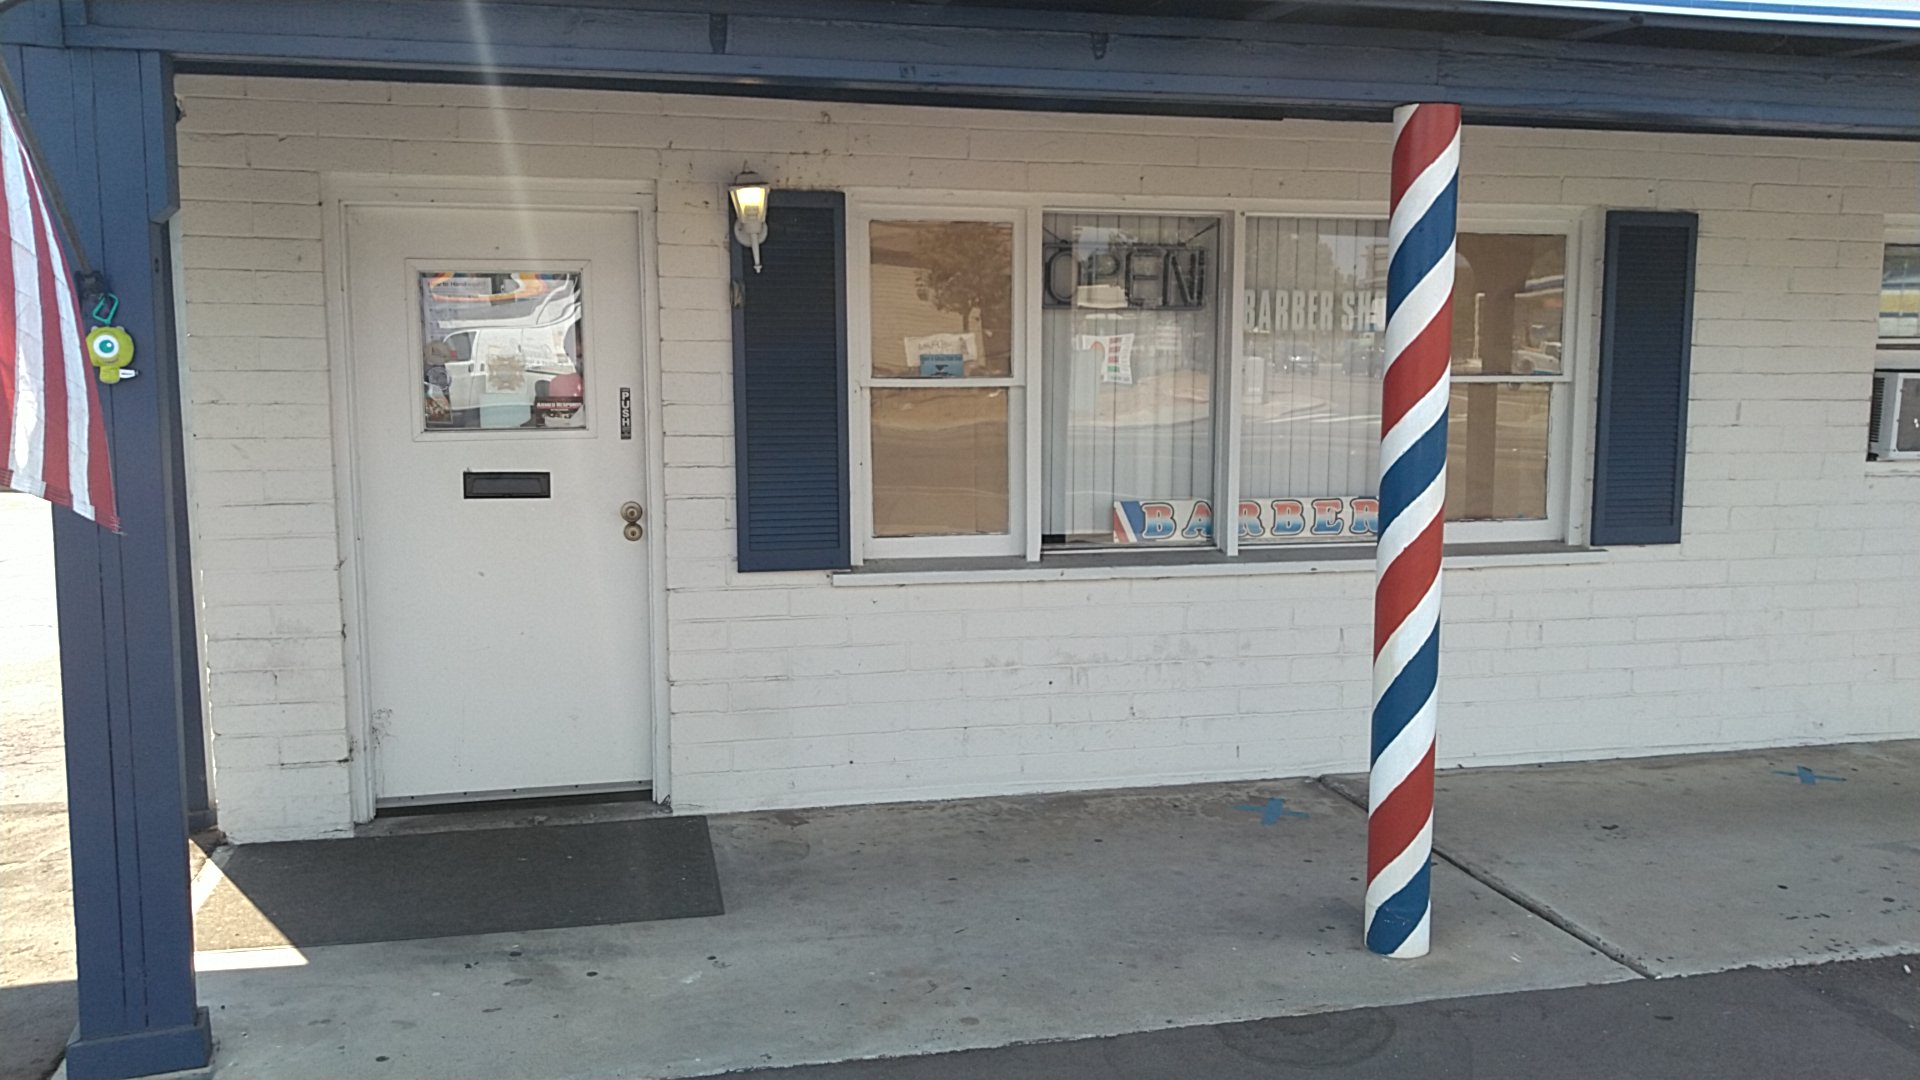 Mission Barber Shop